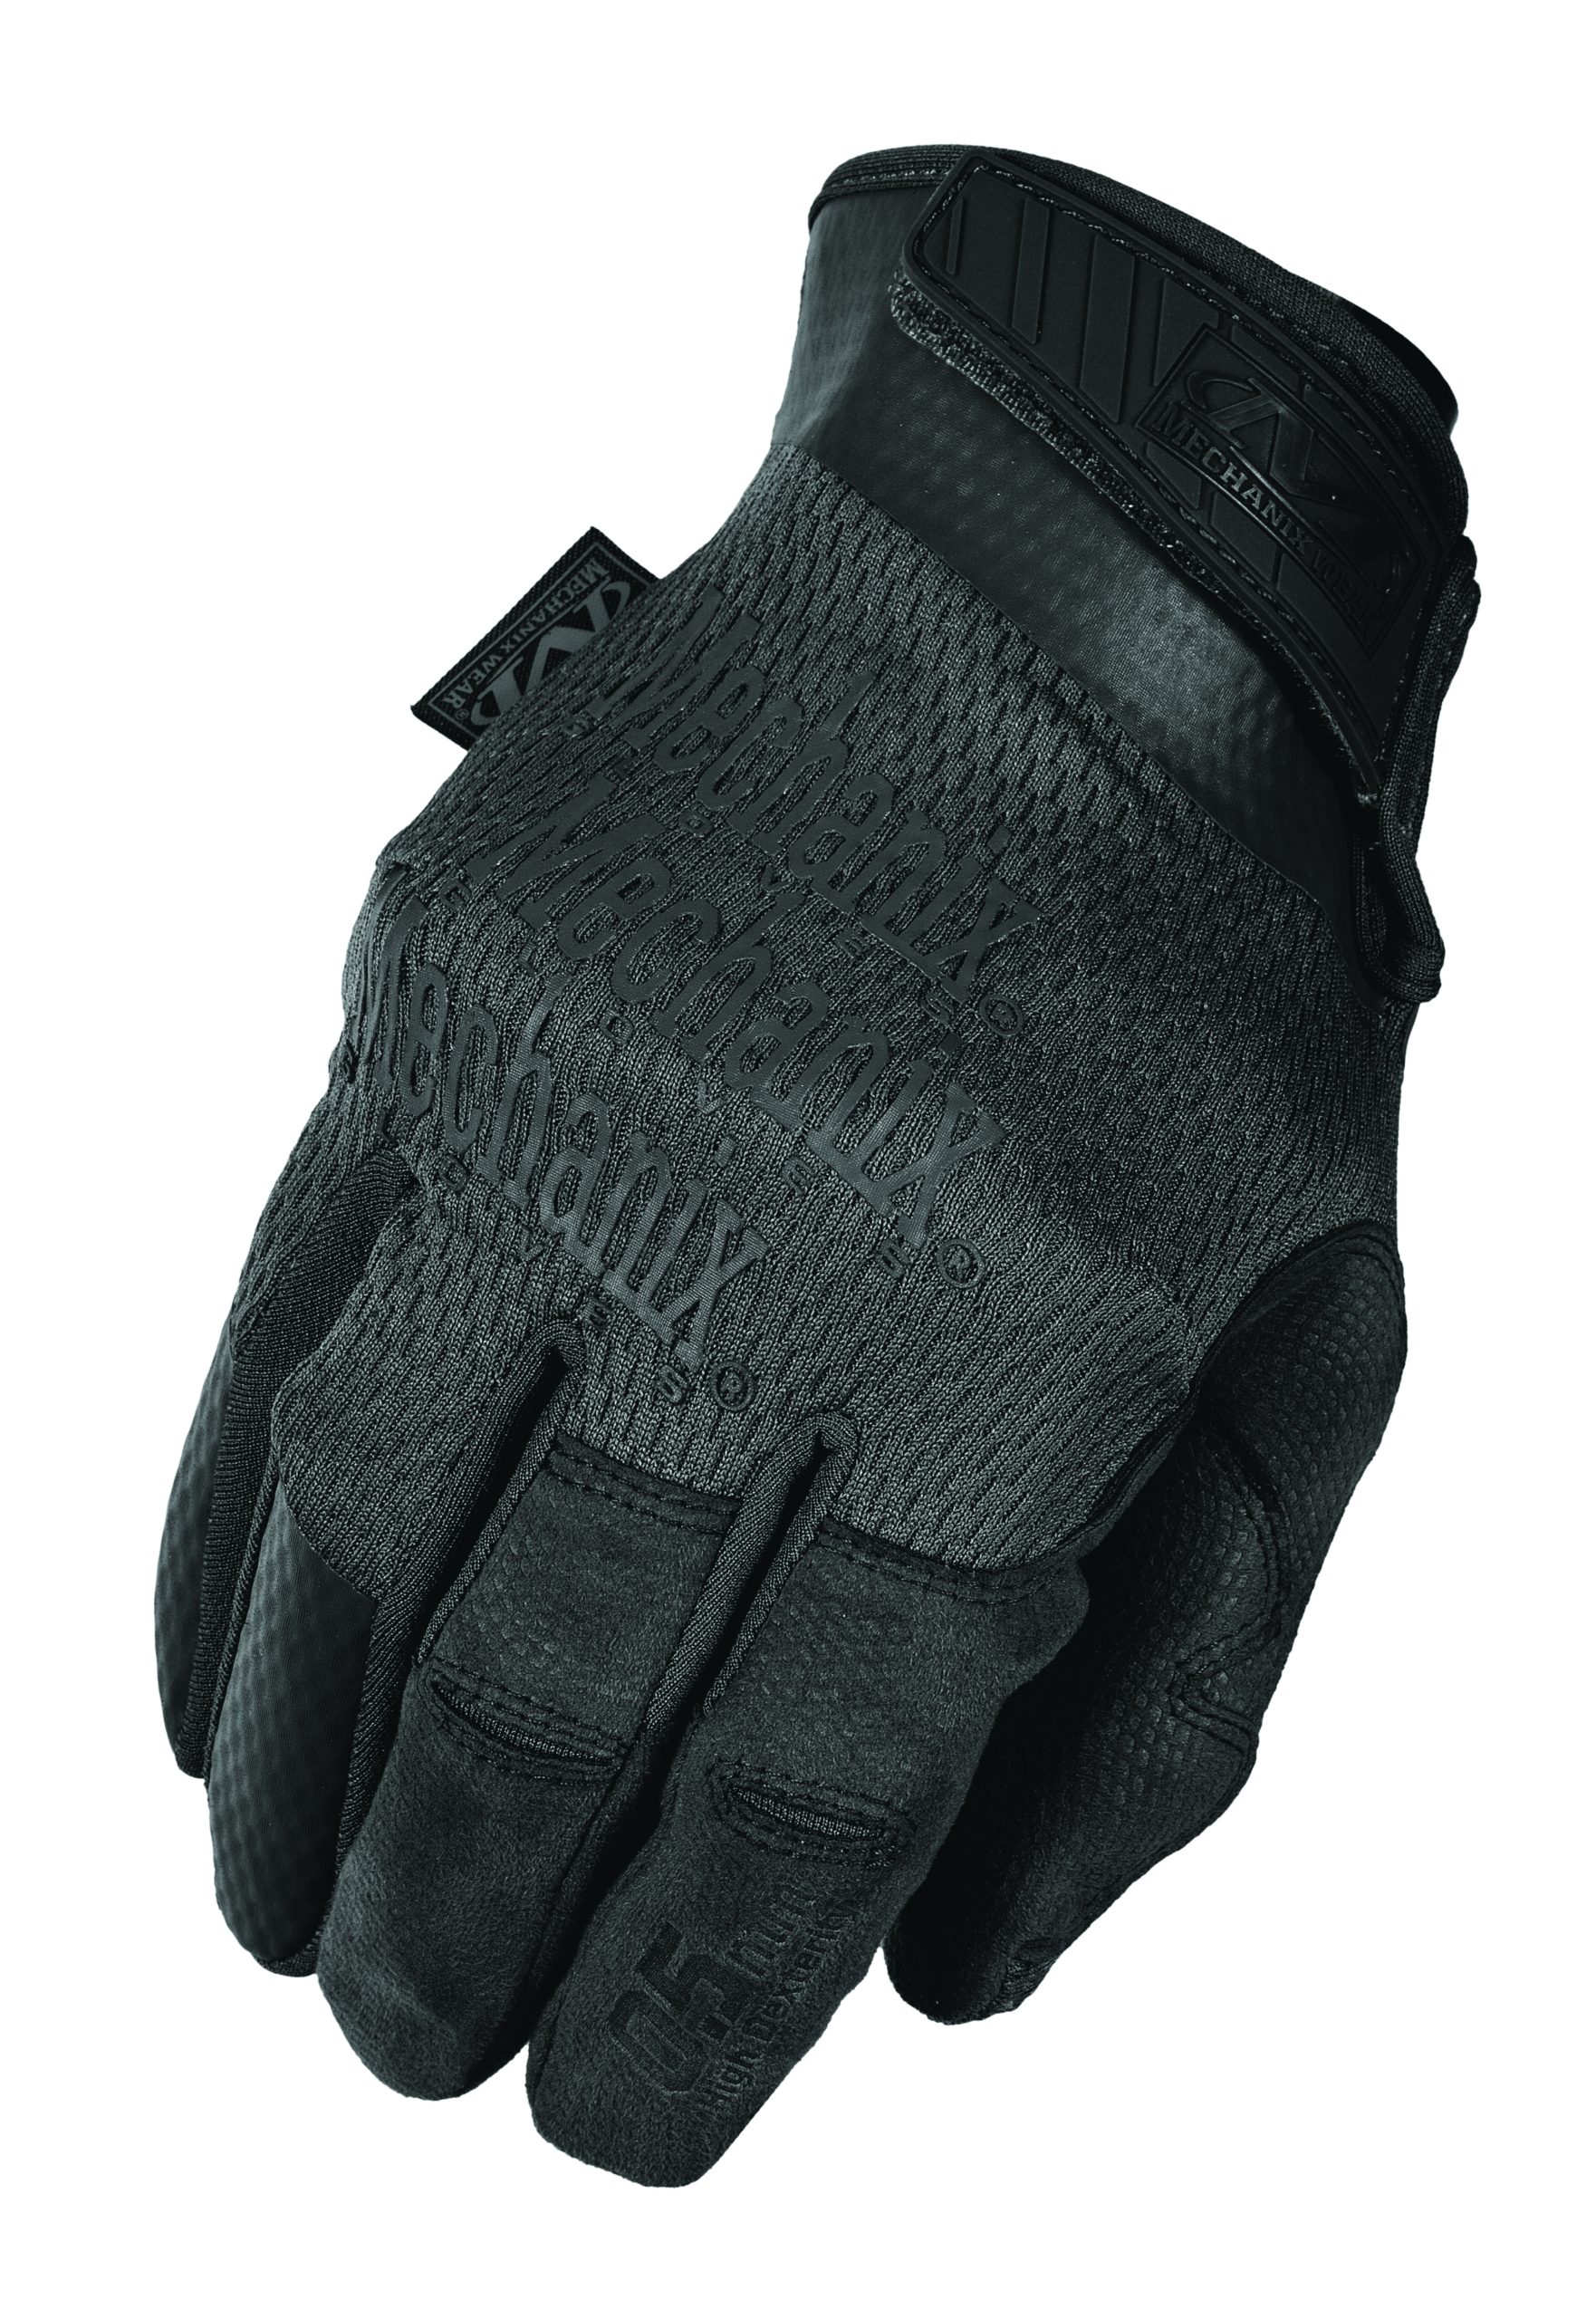 Gants Mechanix Wear H-Dexterity 0.5 - Covert Noir - TIR EQUIPEMENT